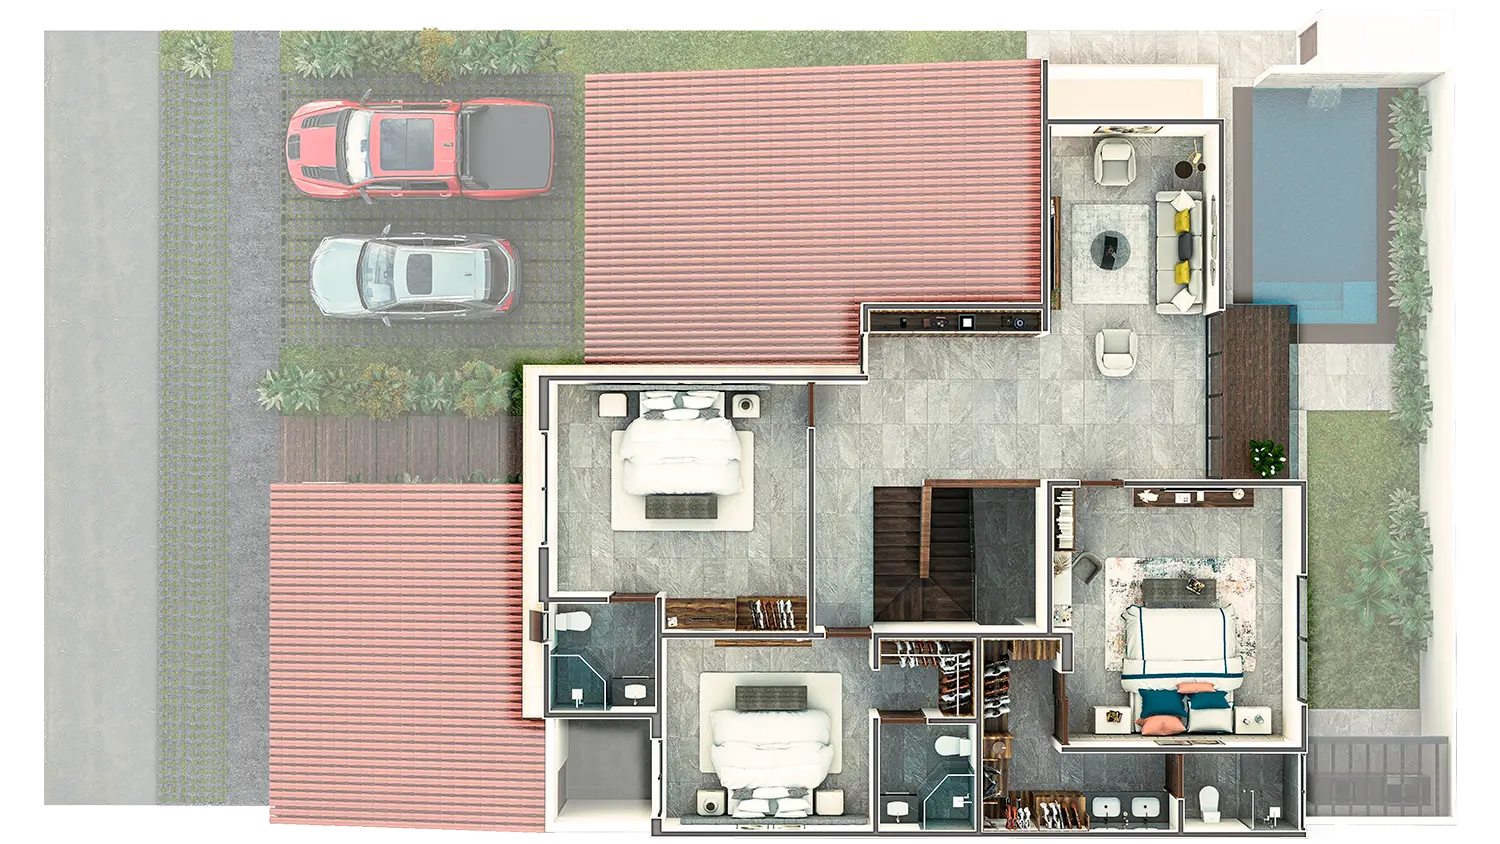 Vista aerea de la maqueta de la casa modelo Scandiano, planta alta.